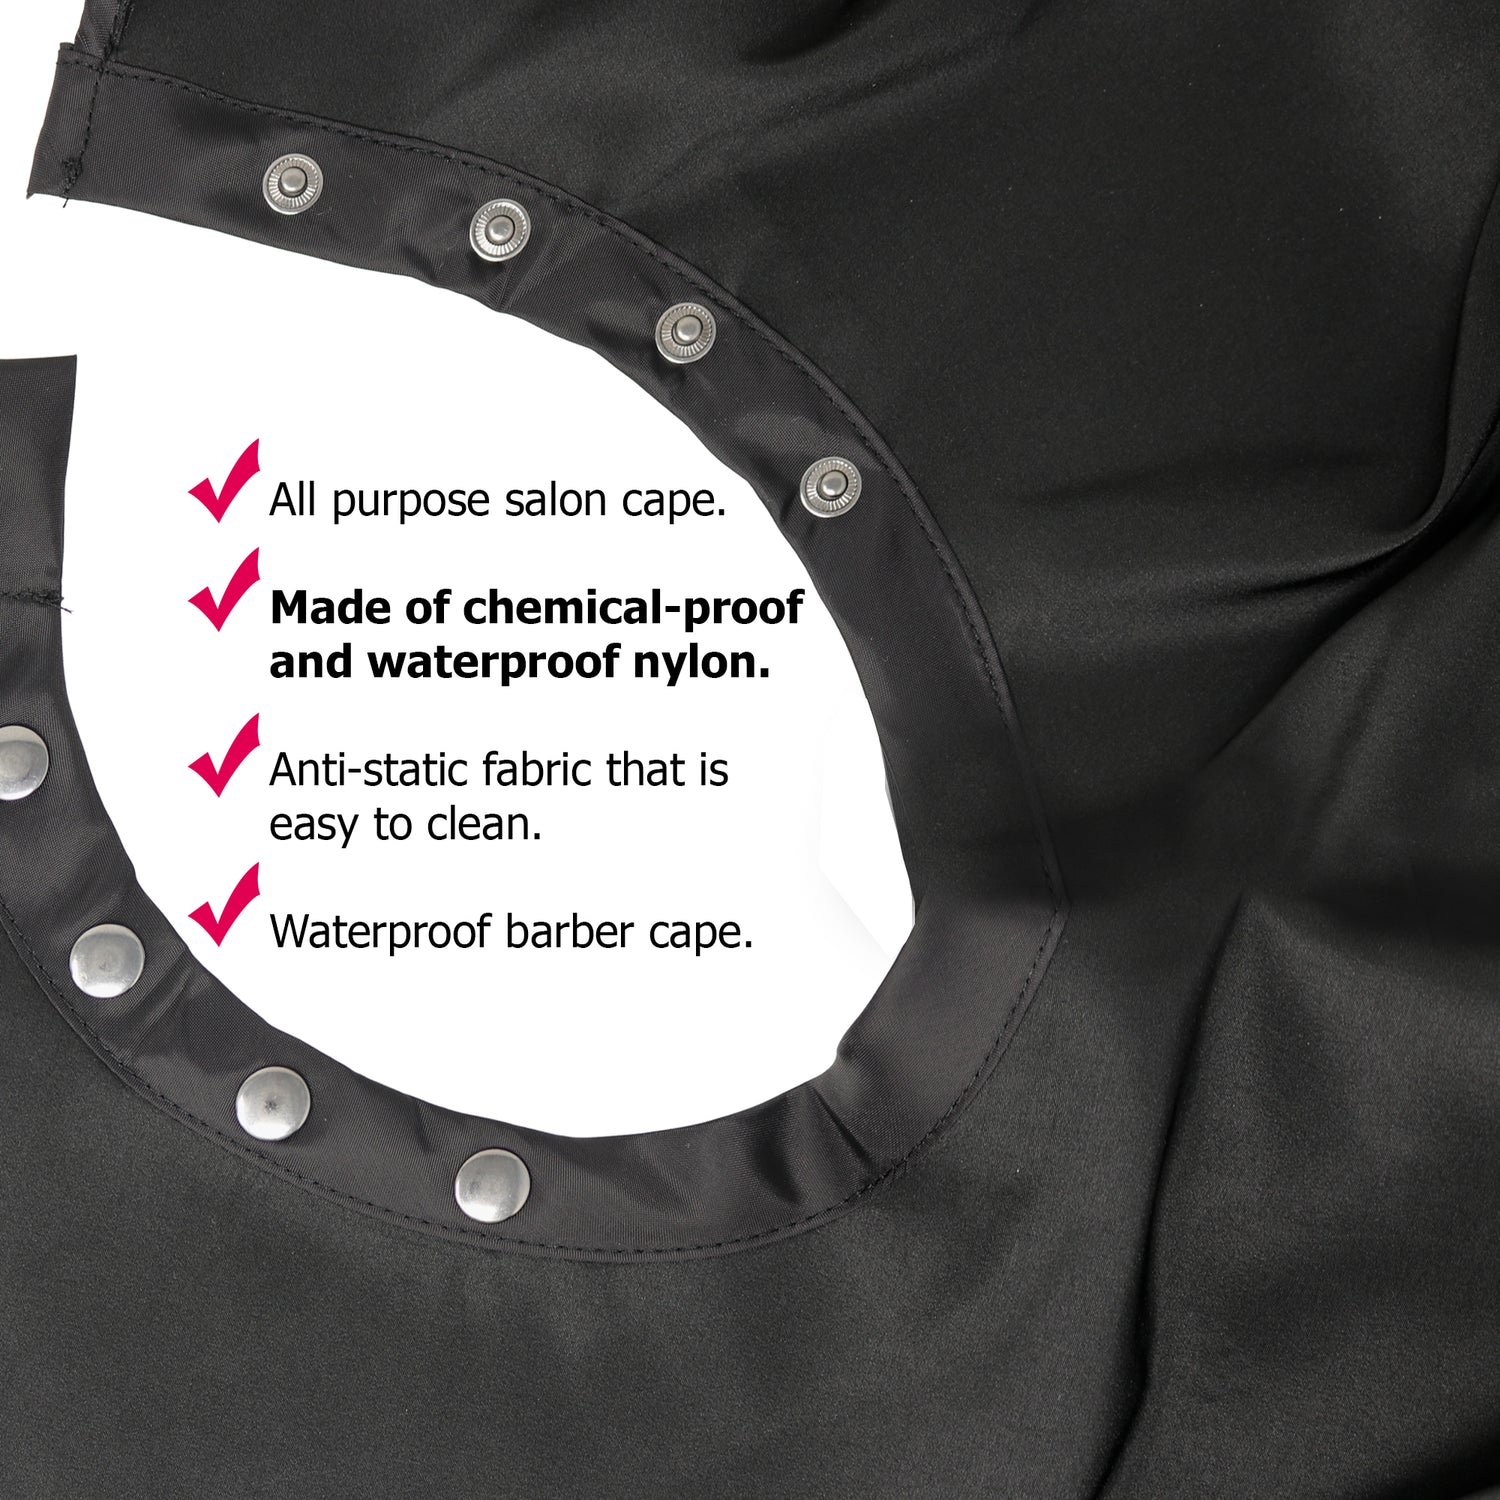 ULTIMATE Premium PLUS Quality Multi-Purpose Salon Capes